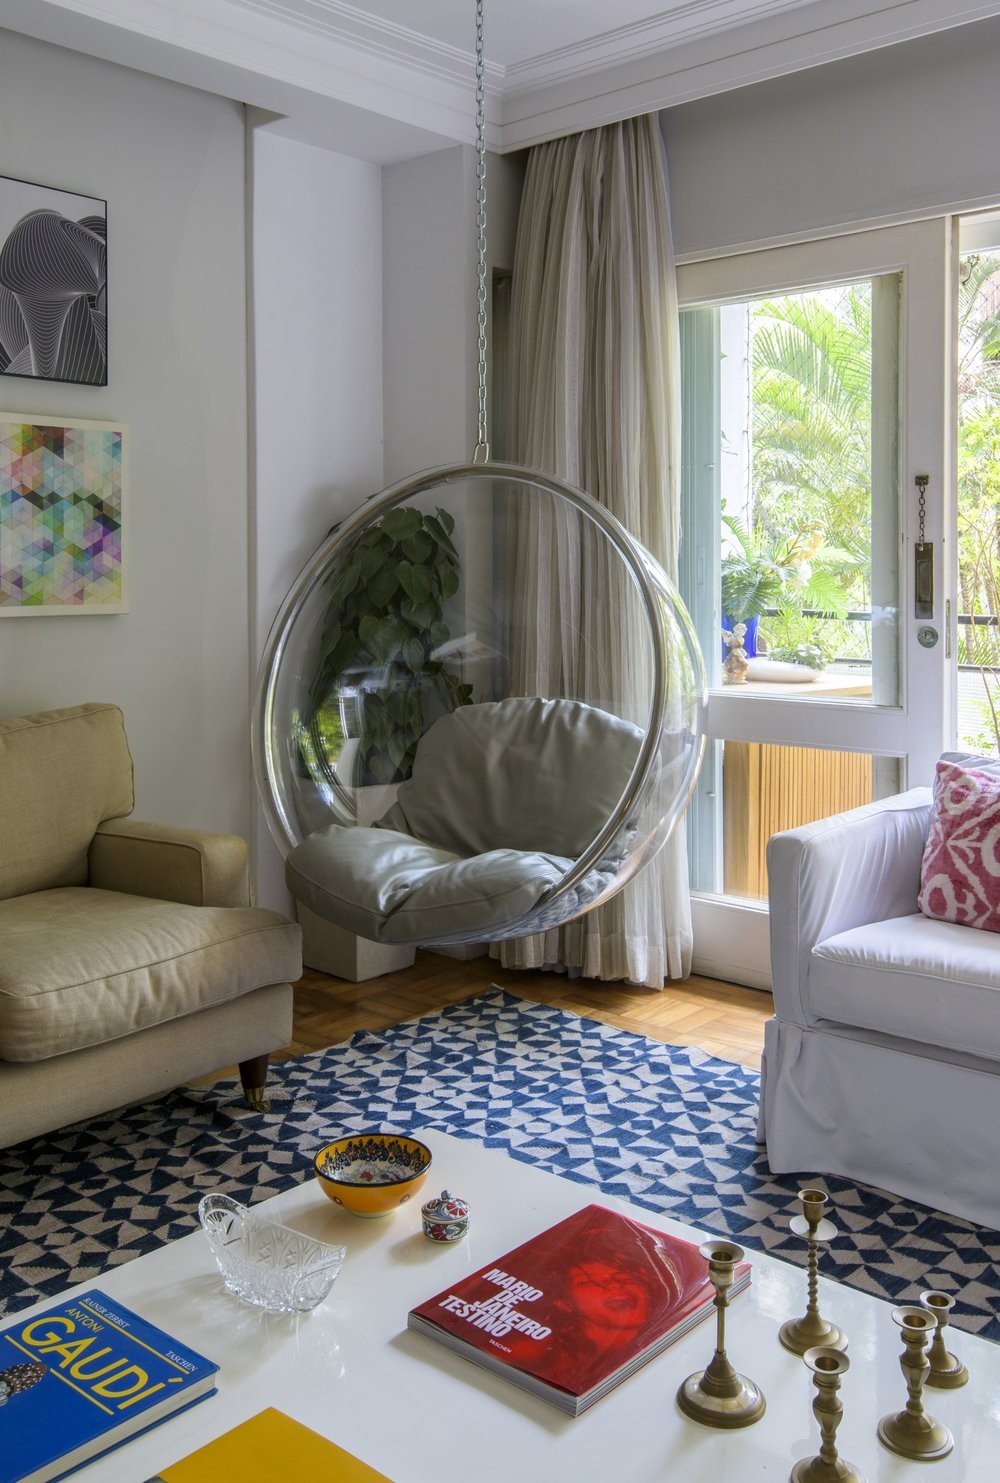 Décor do dia: sala de estar com balanço e varanda integrada (Foto: Edson Ferreira)